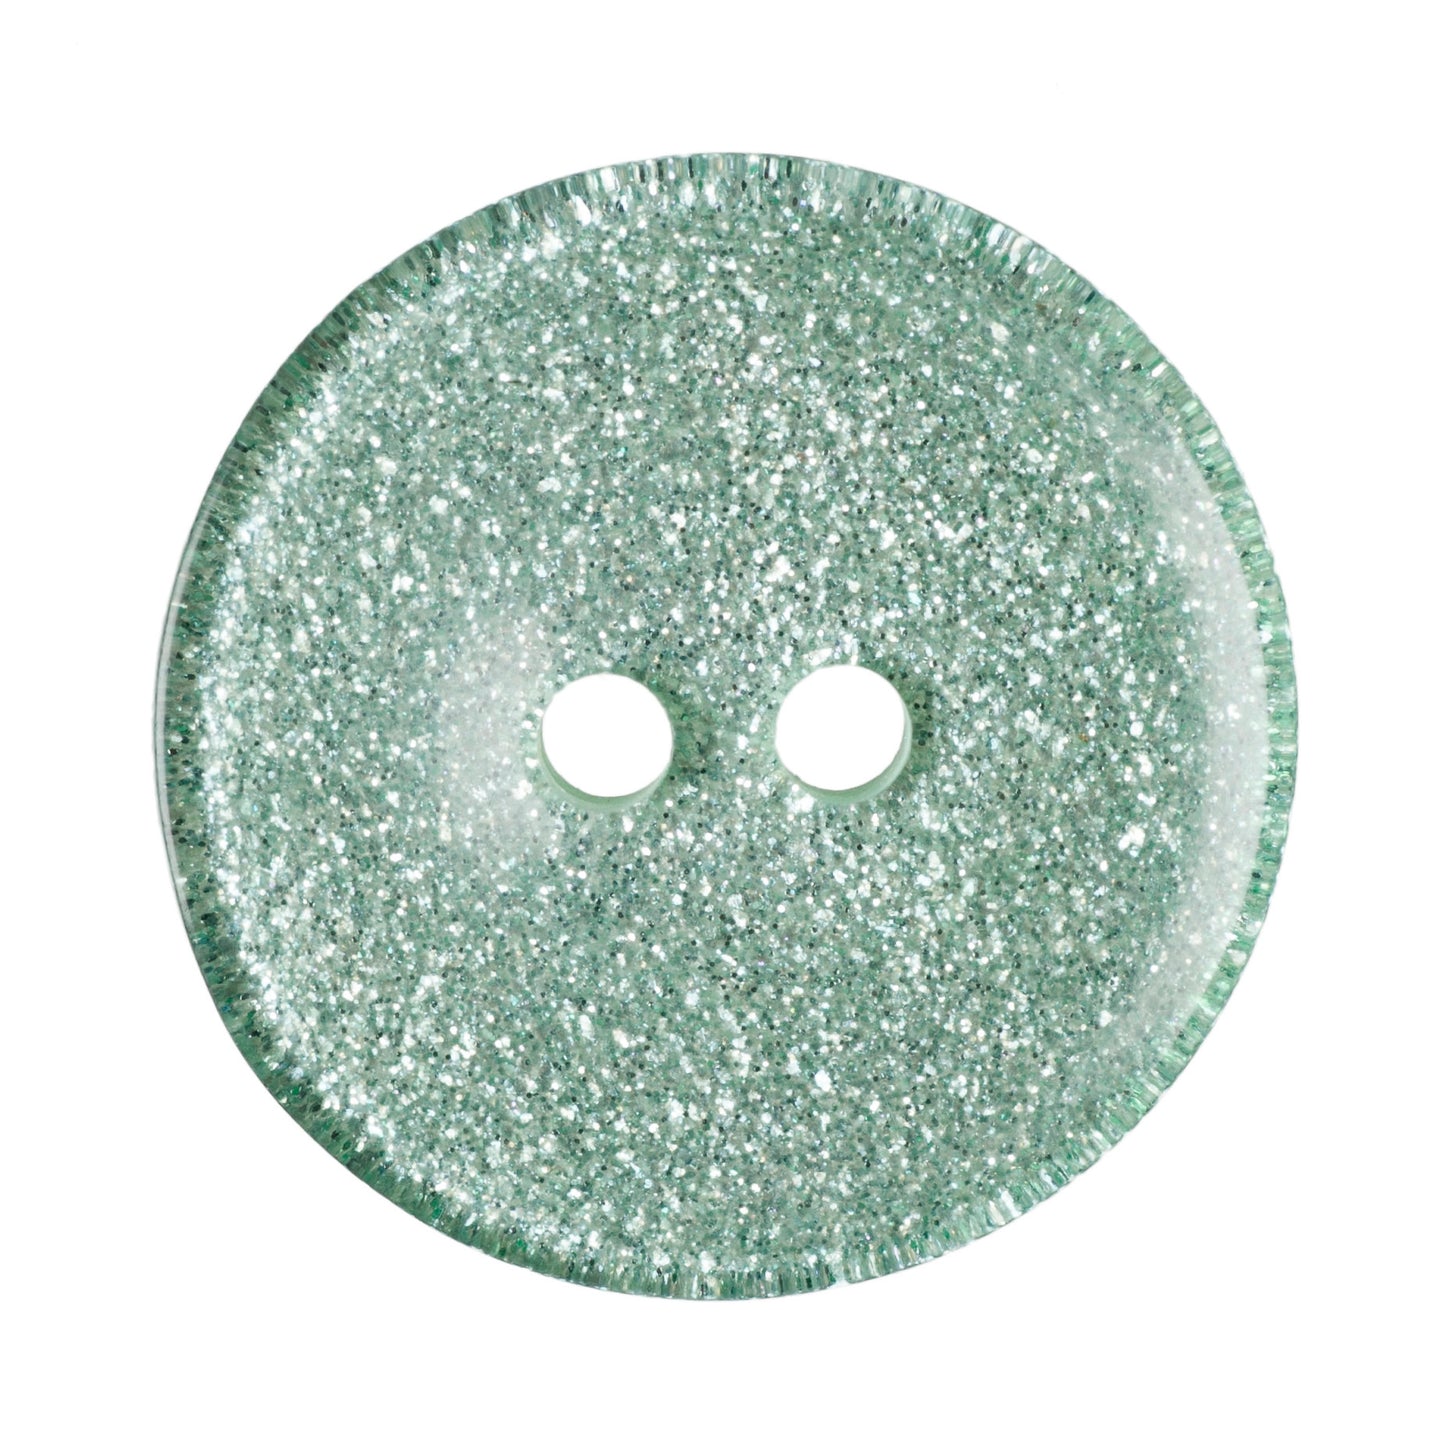 2 Hole Round Glitter Button - 20mm - Light Green [LD12.5]